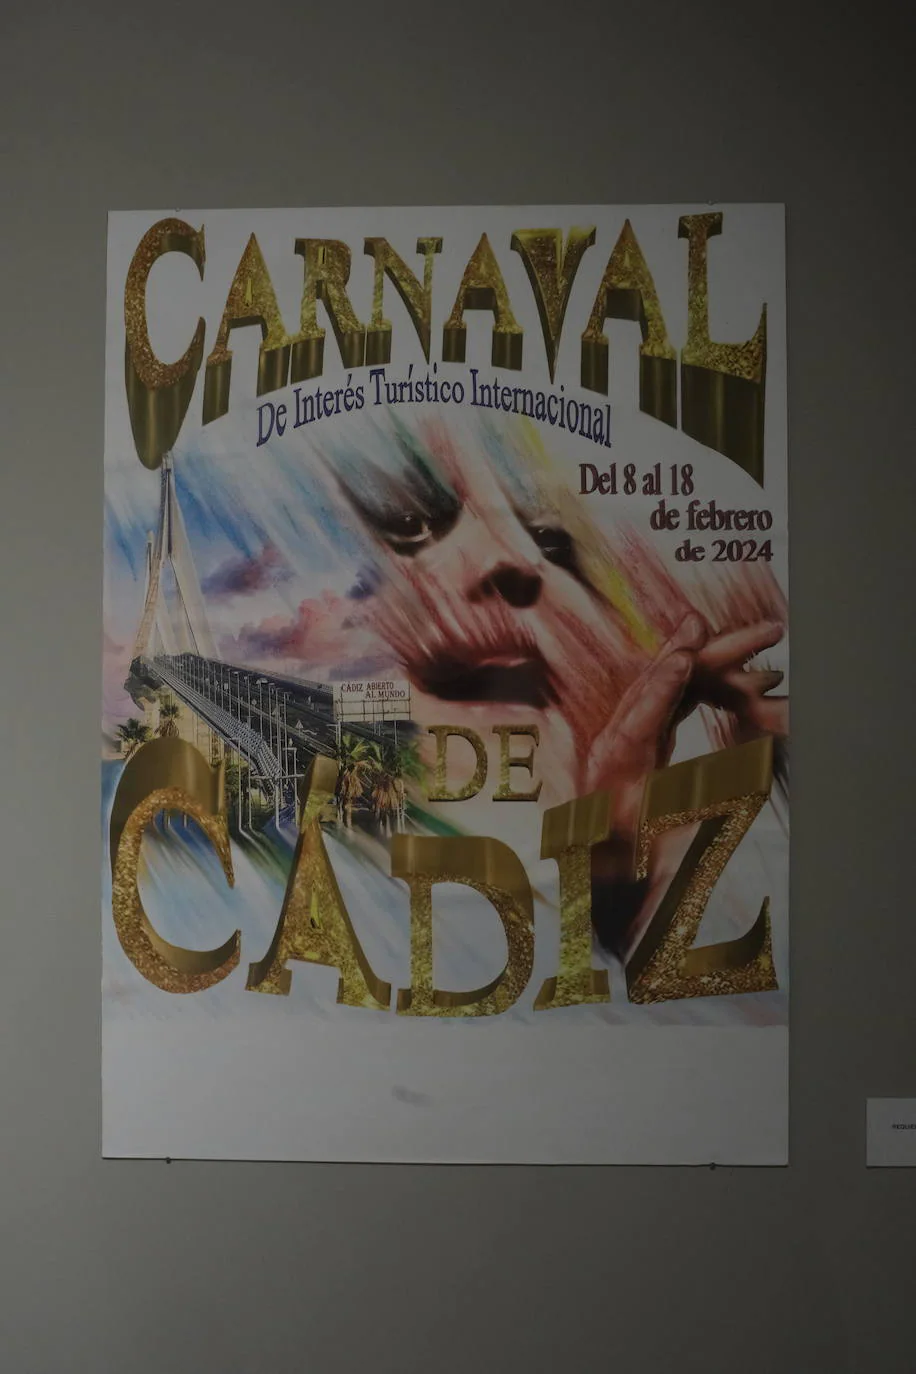 Fotos: Estos son los 45 carteles candidatos para anunciar el Carnaval de Cádiz 2024